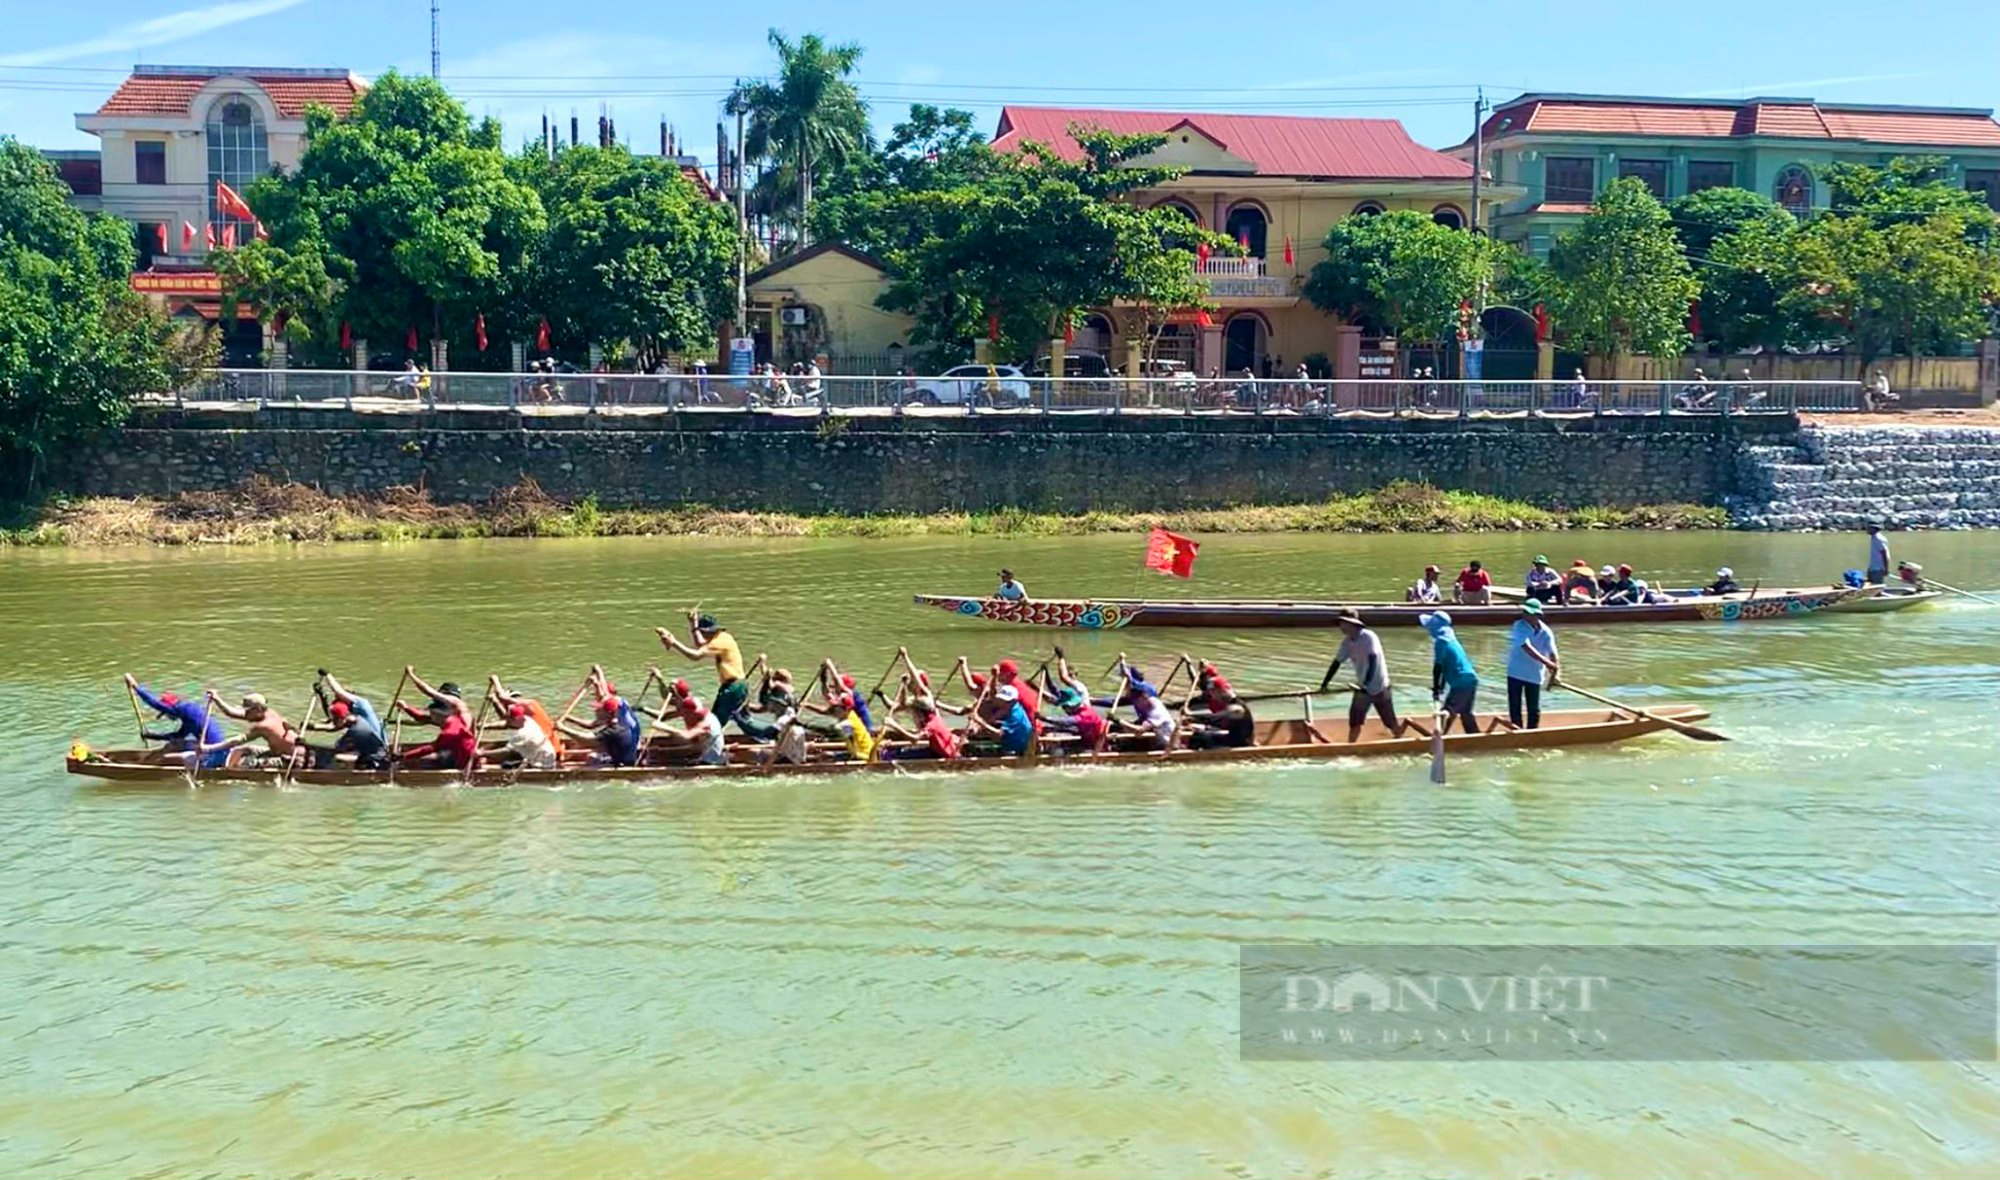 Nhân dịp lễ hội, hàng nghìn người đổ về bờ sông để xem và cổ vũ cho các thuyền trên sông. Nét đẹp của sự kiện này vượt ra ngoài chương trình thế giới và tạo nên một truyền thống văn hóa đặc biệt trong lòng người dân.